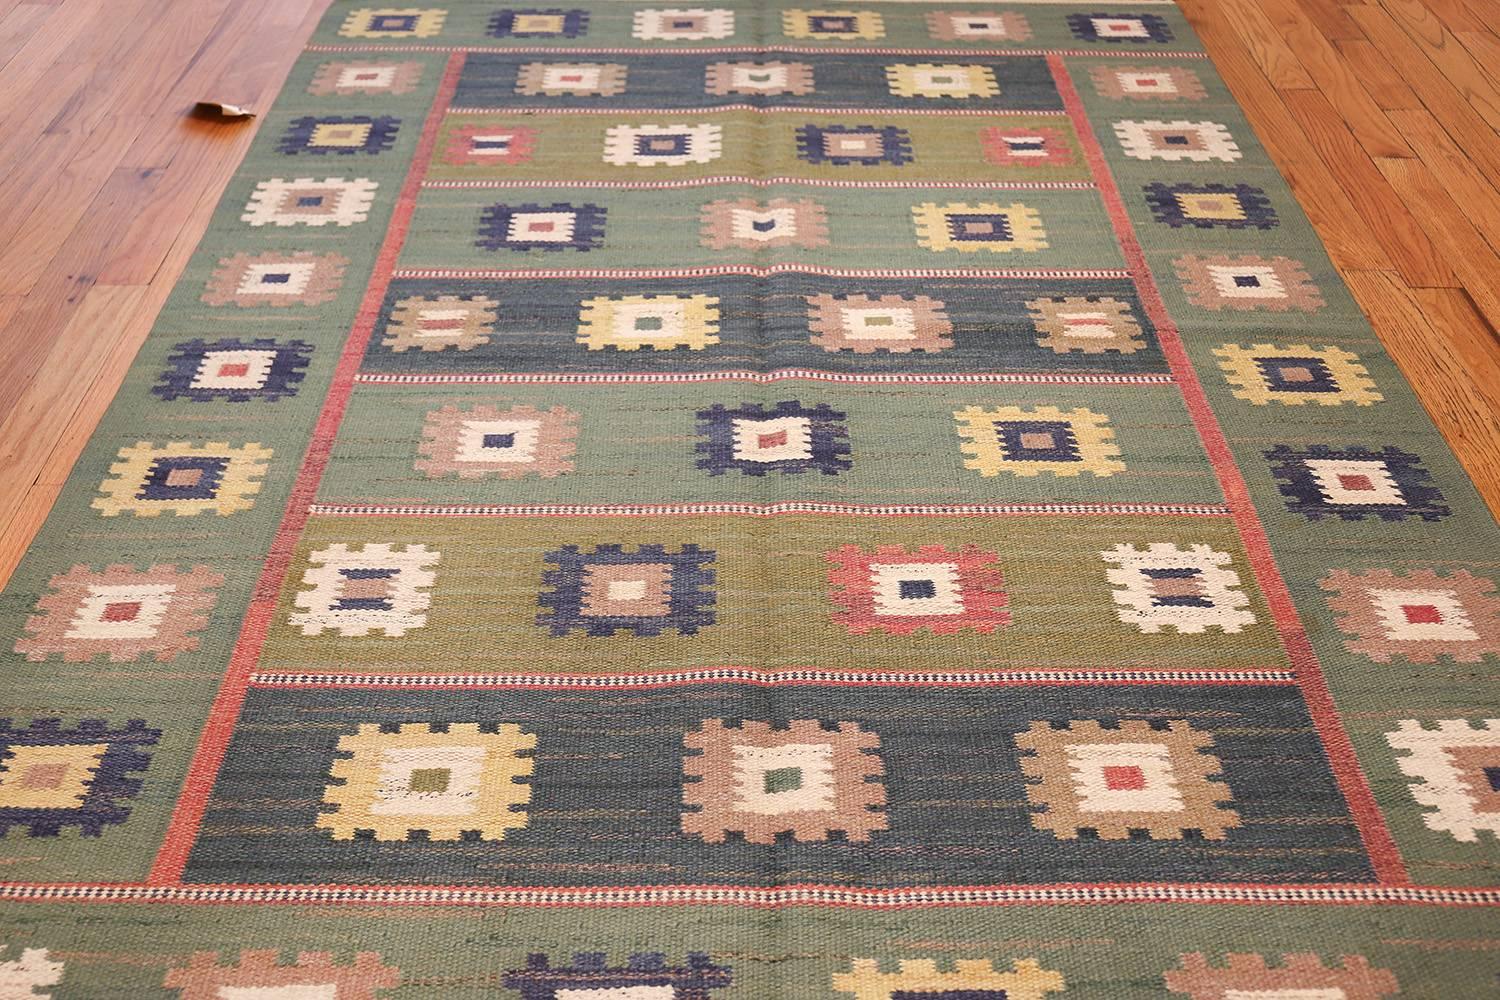 Scandinavian Vintage Swedish Carpet by Marta Maas-Fjetterström. Size: 5 ft 7 in x 8 ft 4 in